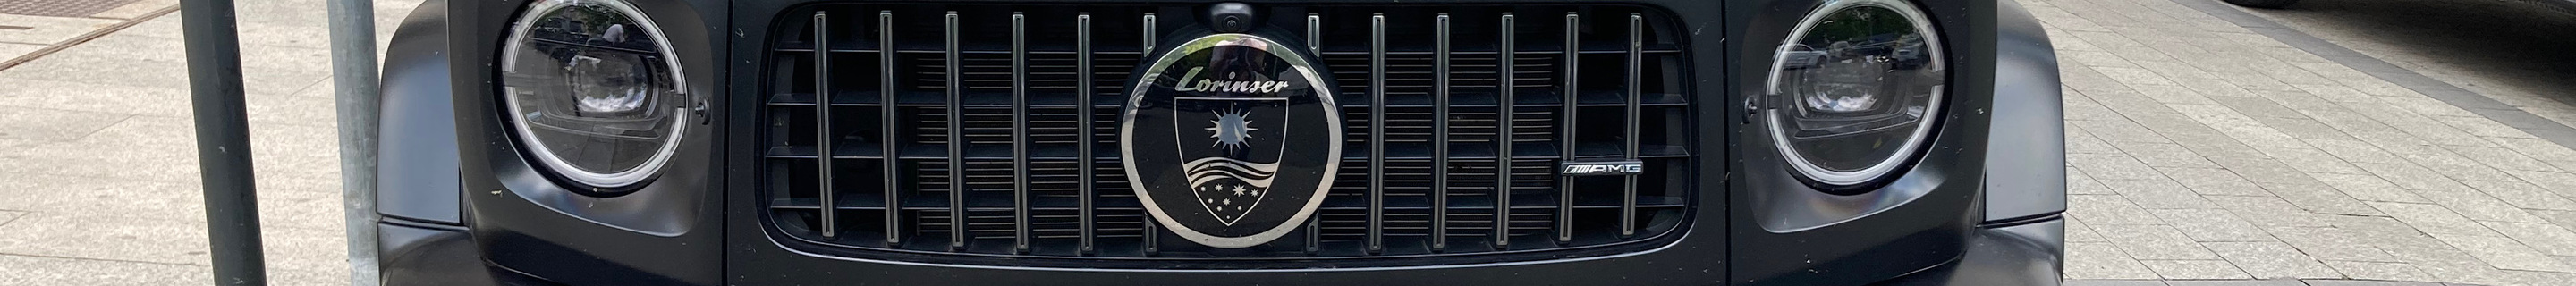 Mercedes-AMG G 63 W463 2018 Lorinser